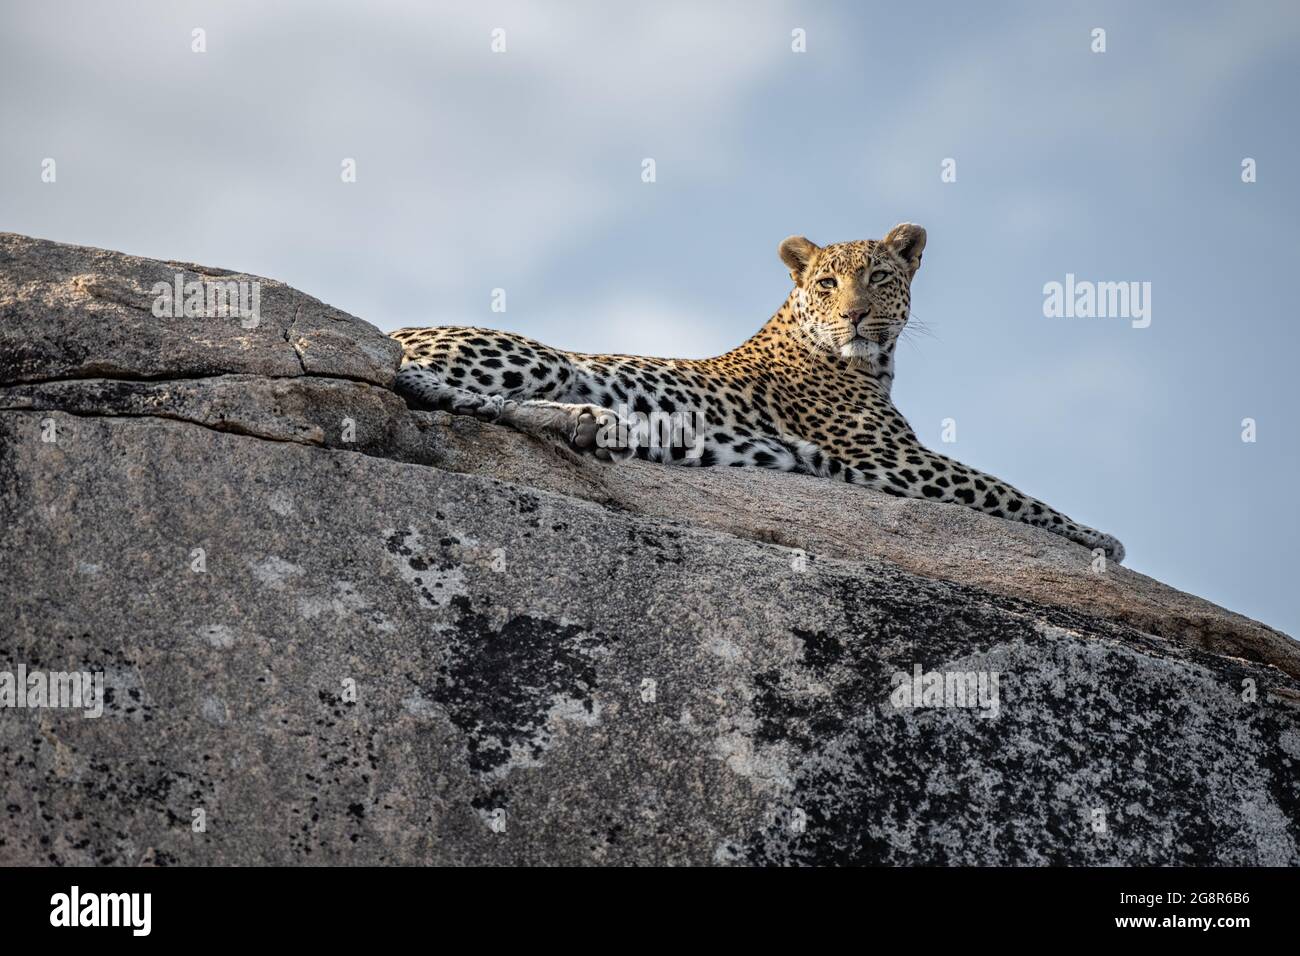 Ein Leopard, Panthera pardus, liegt auf einem Felsbrocken und blickt aus dem Rahmen, blauer Himmel Hintergrund Stockfoto